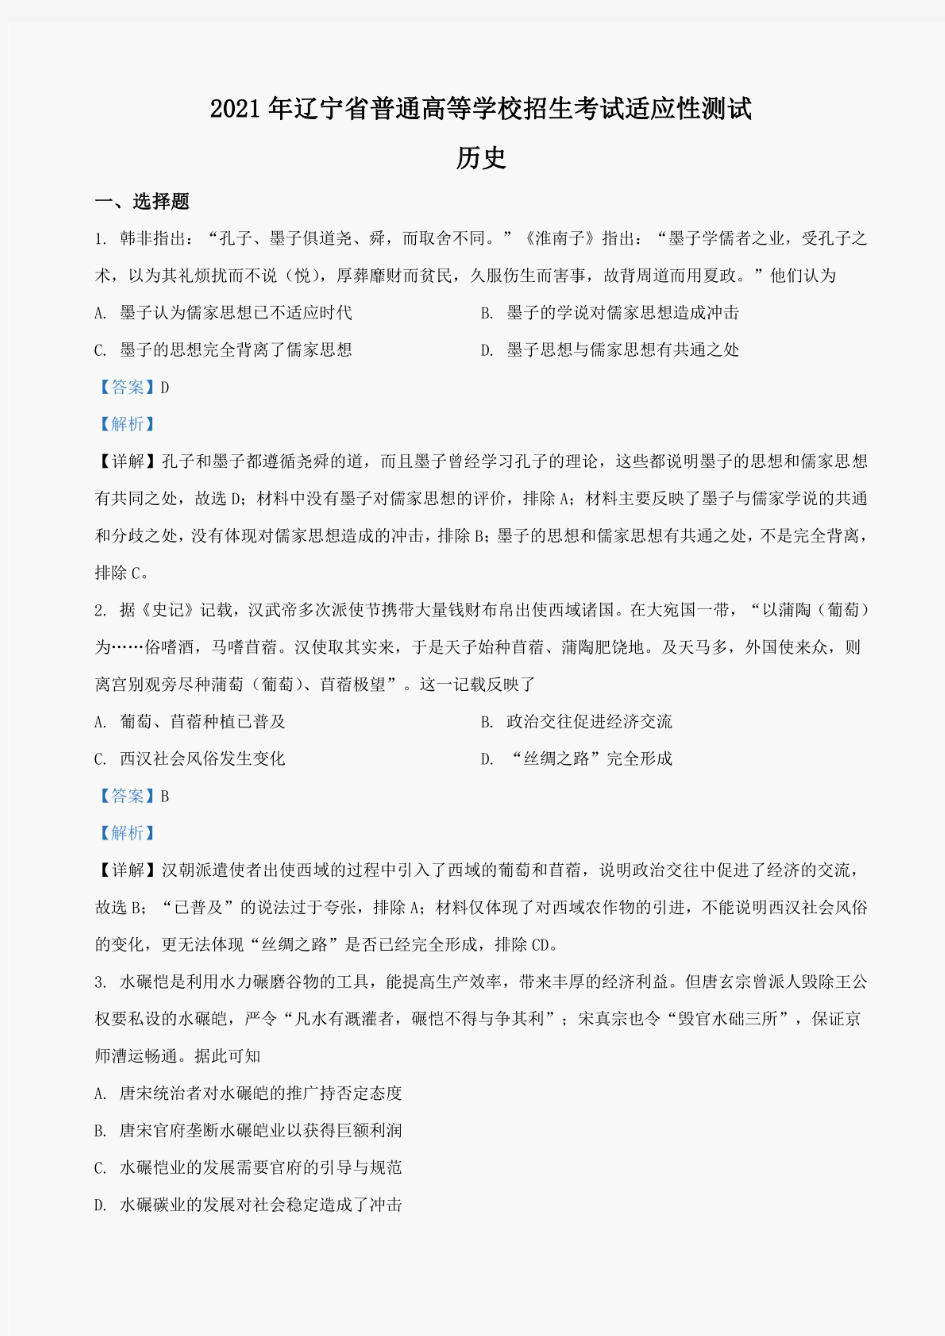 八省联考2021新高考适应性考试历史真题及解析(辽宁)(2021.1.24)